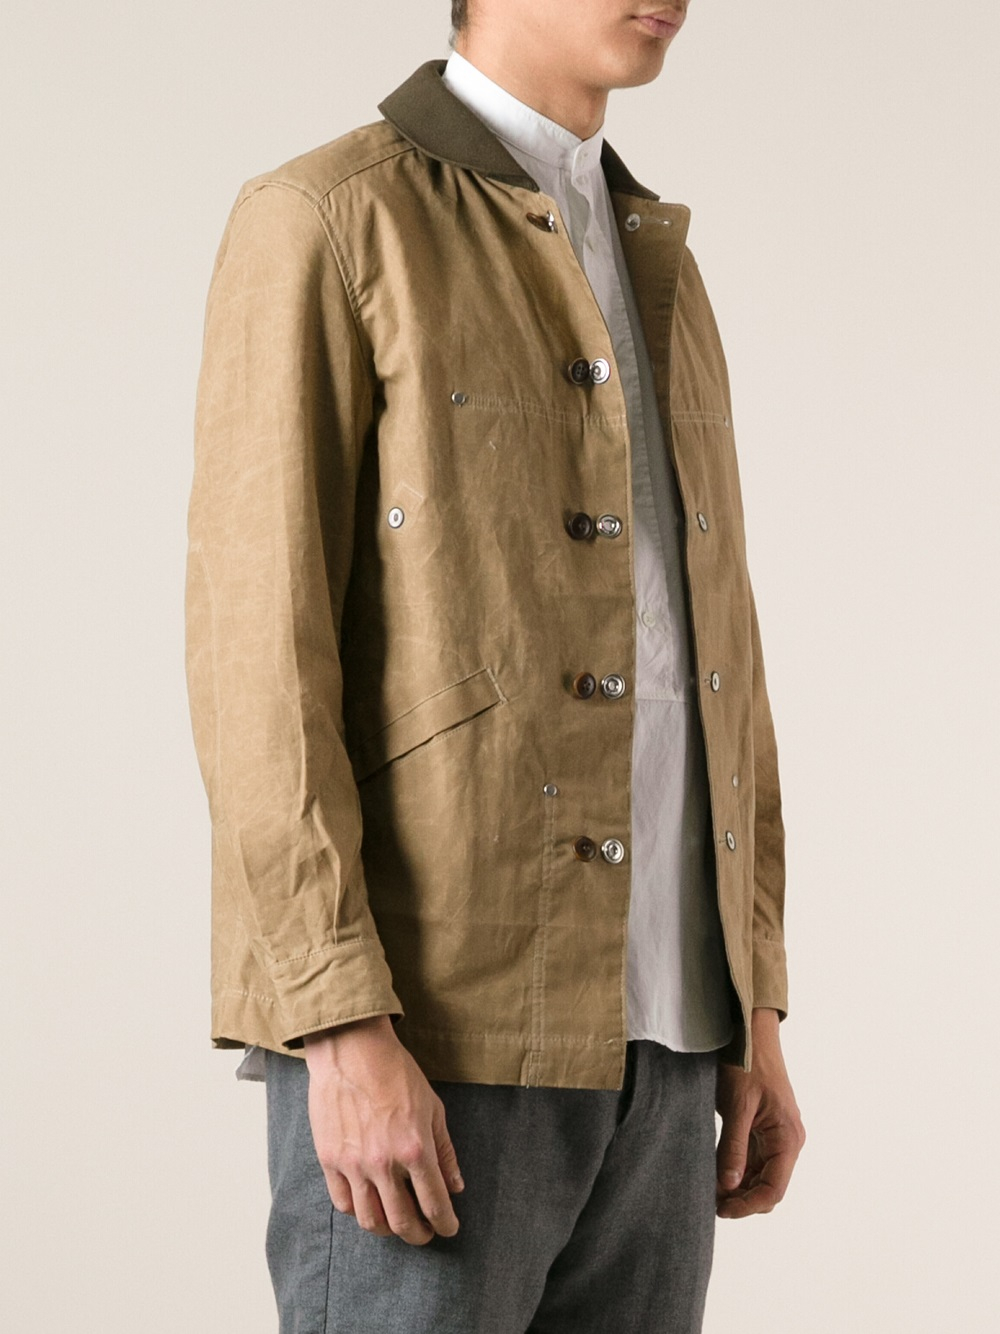 Junya Watanabe Worker Jacket in Brown for Men - Lyst